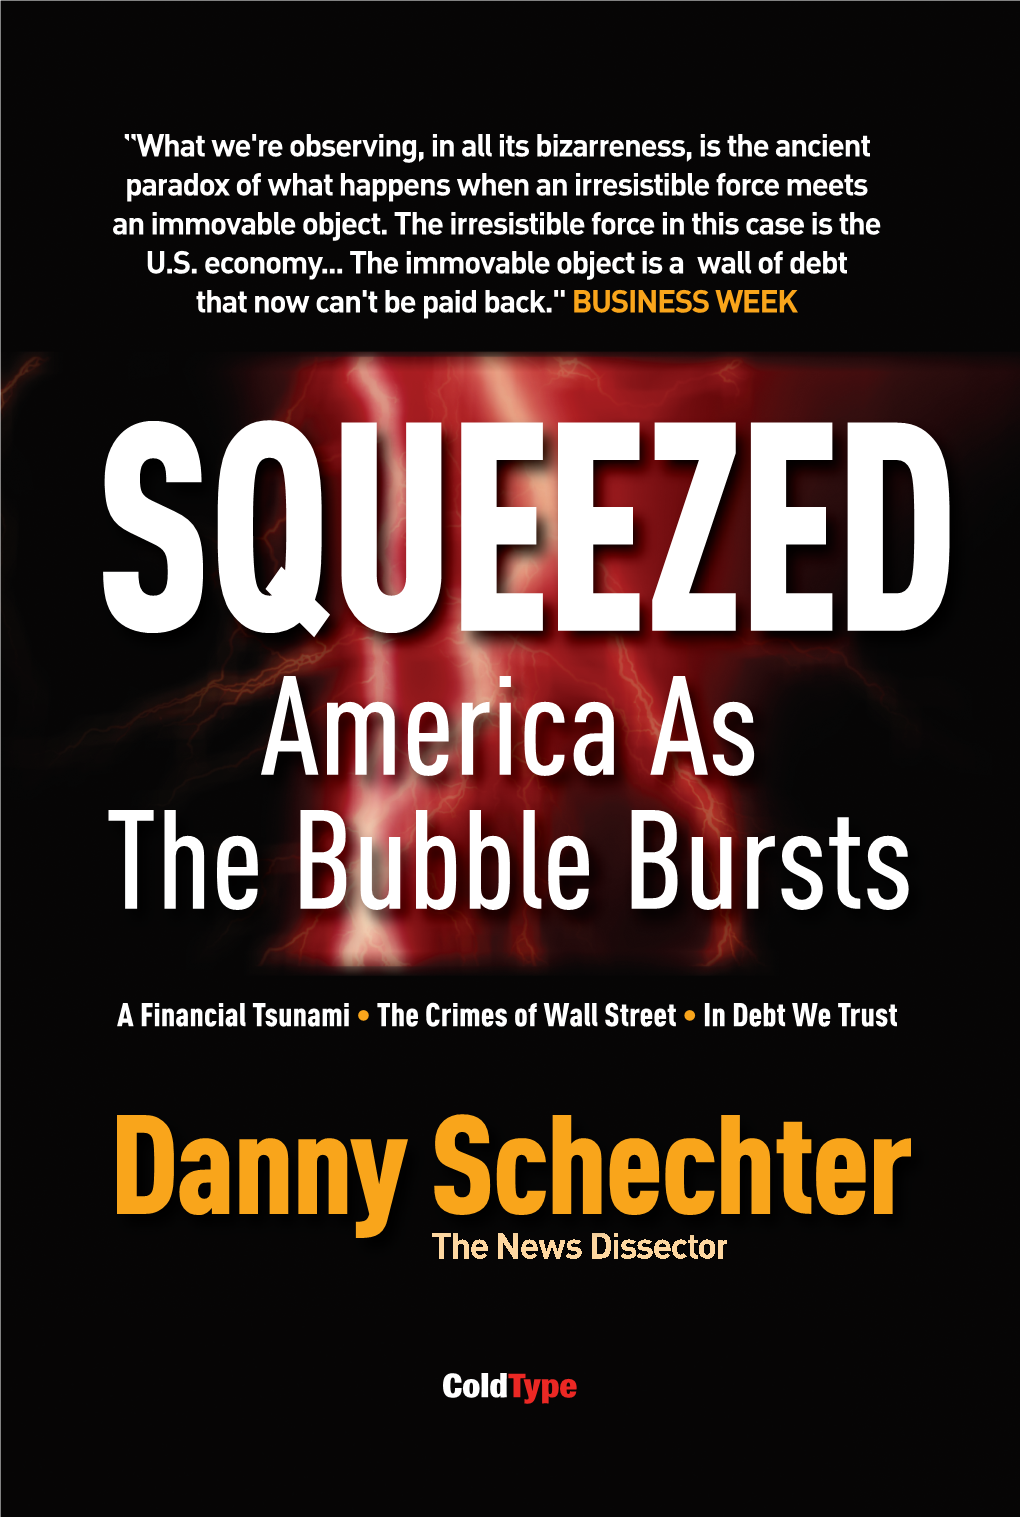 Danny Schechter the News Dissector